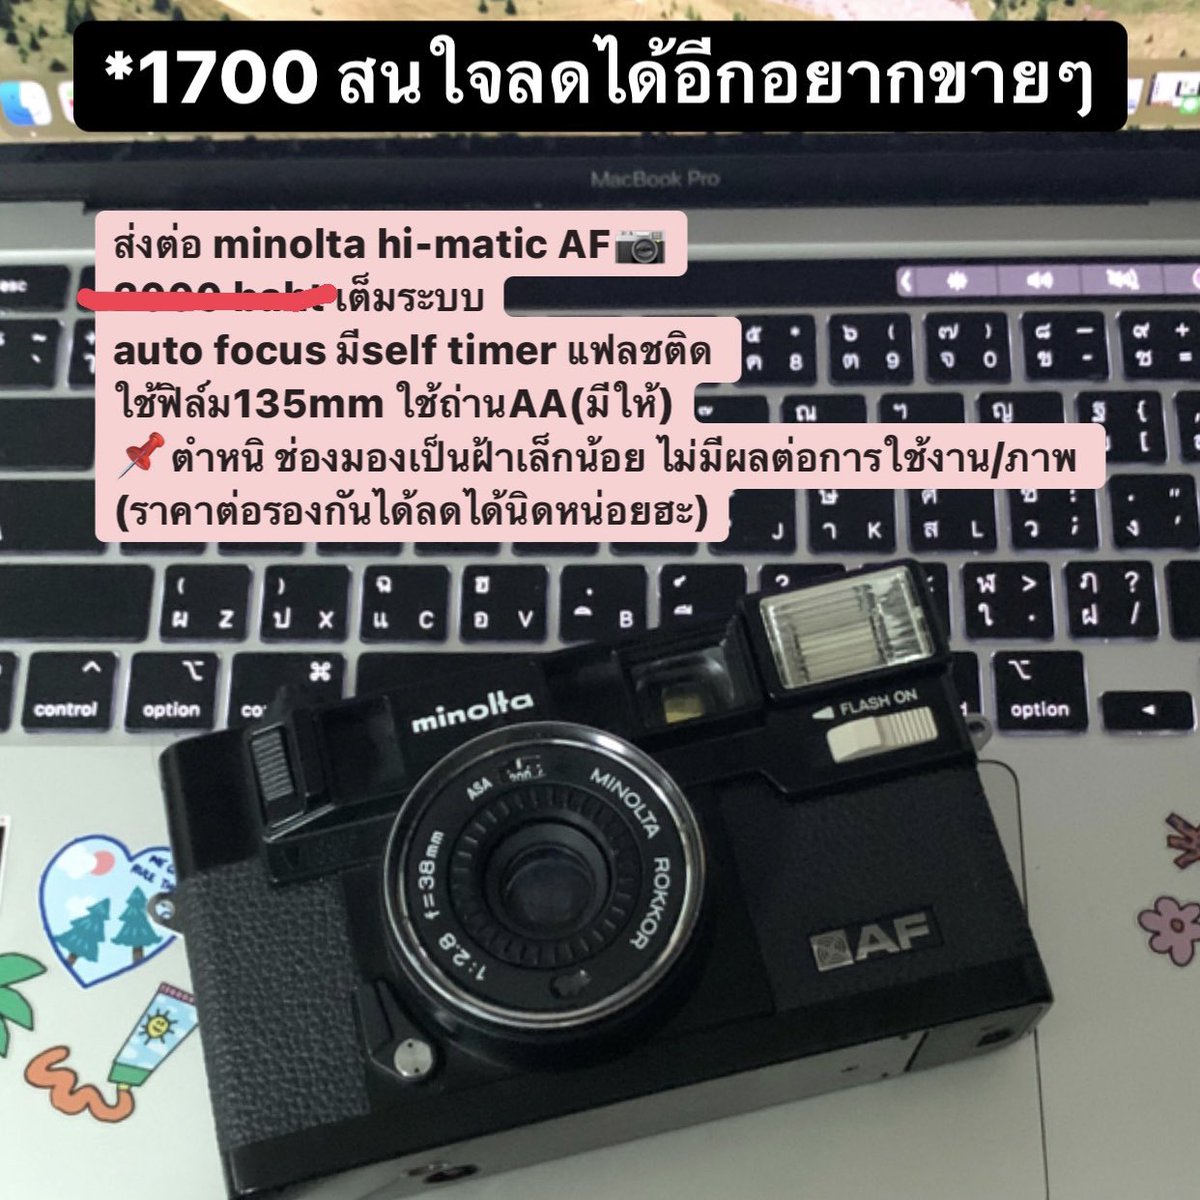 ขายค่า รายละเอียดตามภาพ
📌 1,700 บาทเท่านั้น สนใจลดได้อีก ทักมาขอวดอเพิ่มเติมได้ค่า #กล้องฟิล์มมือสอง #กล้องฟิล์มราคาถูก #กล้องมือสอง #กล้งฟิล์มมือสองราคาถูก #minoltahimaticaf